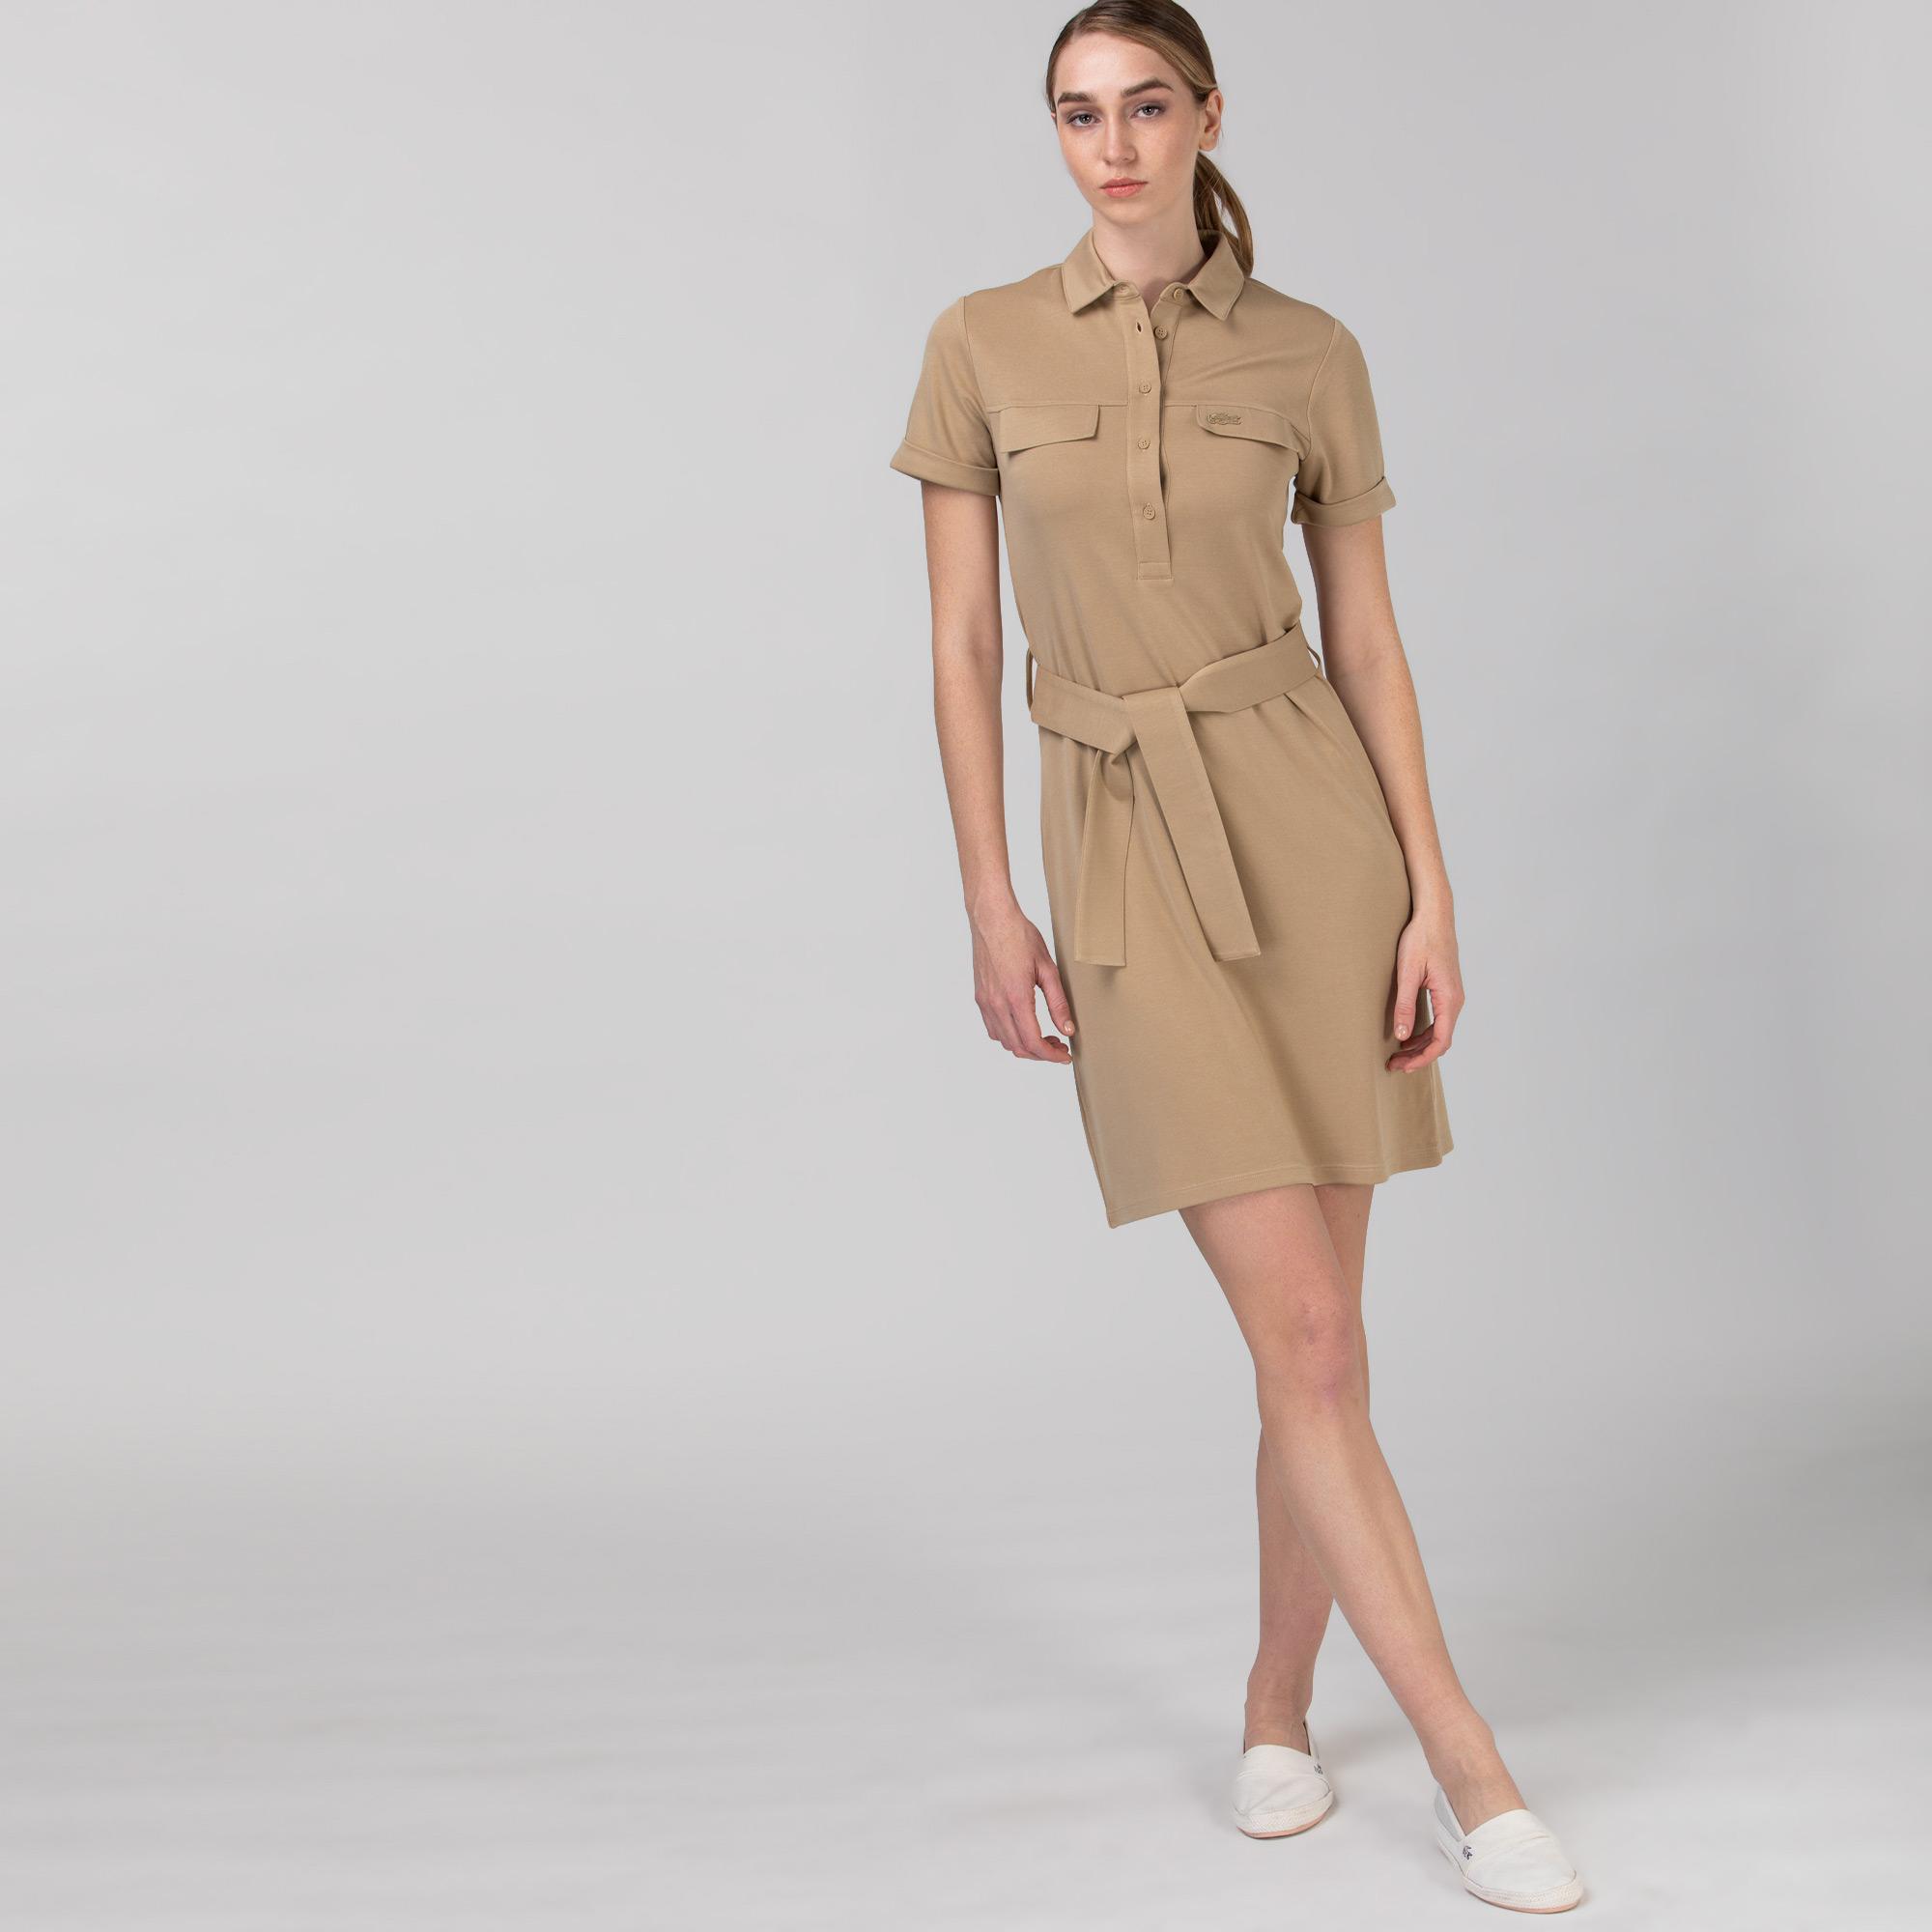 Lacoste Kadın Kısa Kollu Gömlek Yaka Açık Kahverengi Elbise. 4